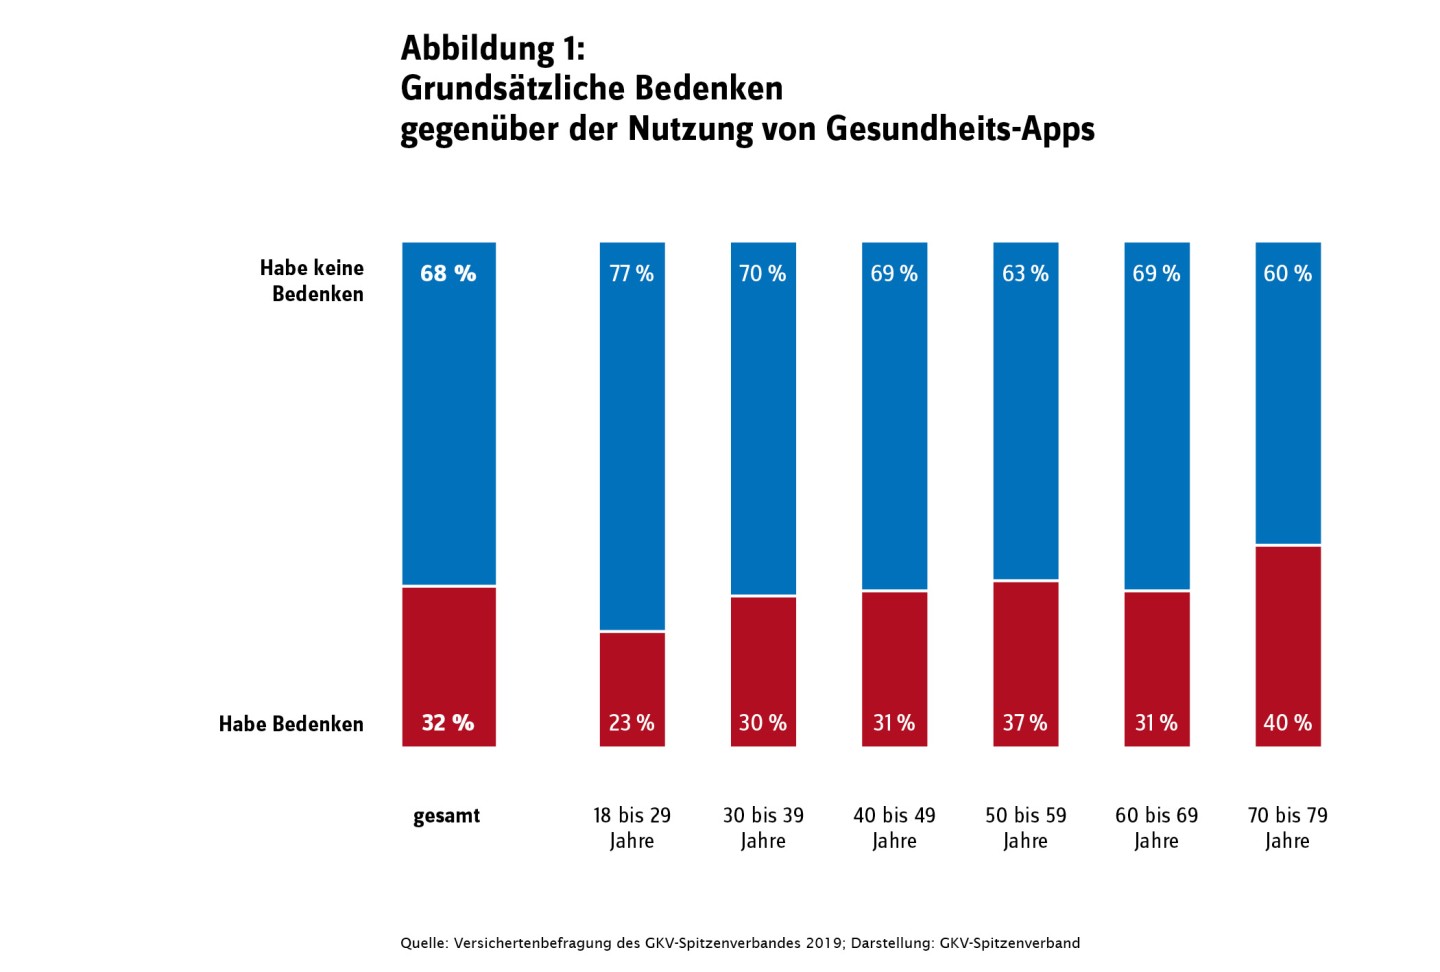 Abbildung zeigt die grundsätzlichen Bedenken gegenüber der Nutzung von Gesundheits-Apps: 68 Prozent der Befragten haben im Durchschnitt keine Bedenken, 32 Prozent haben Bedenken. 